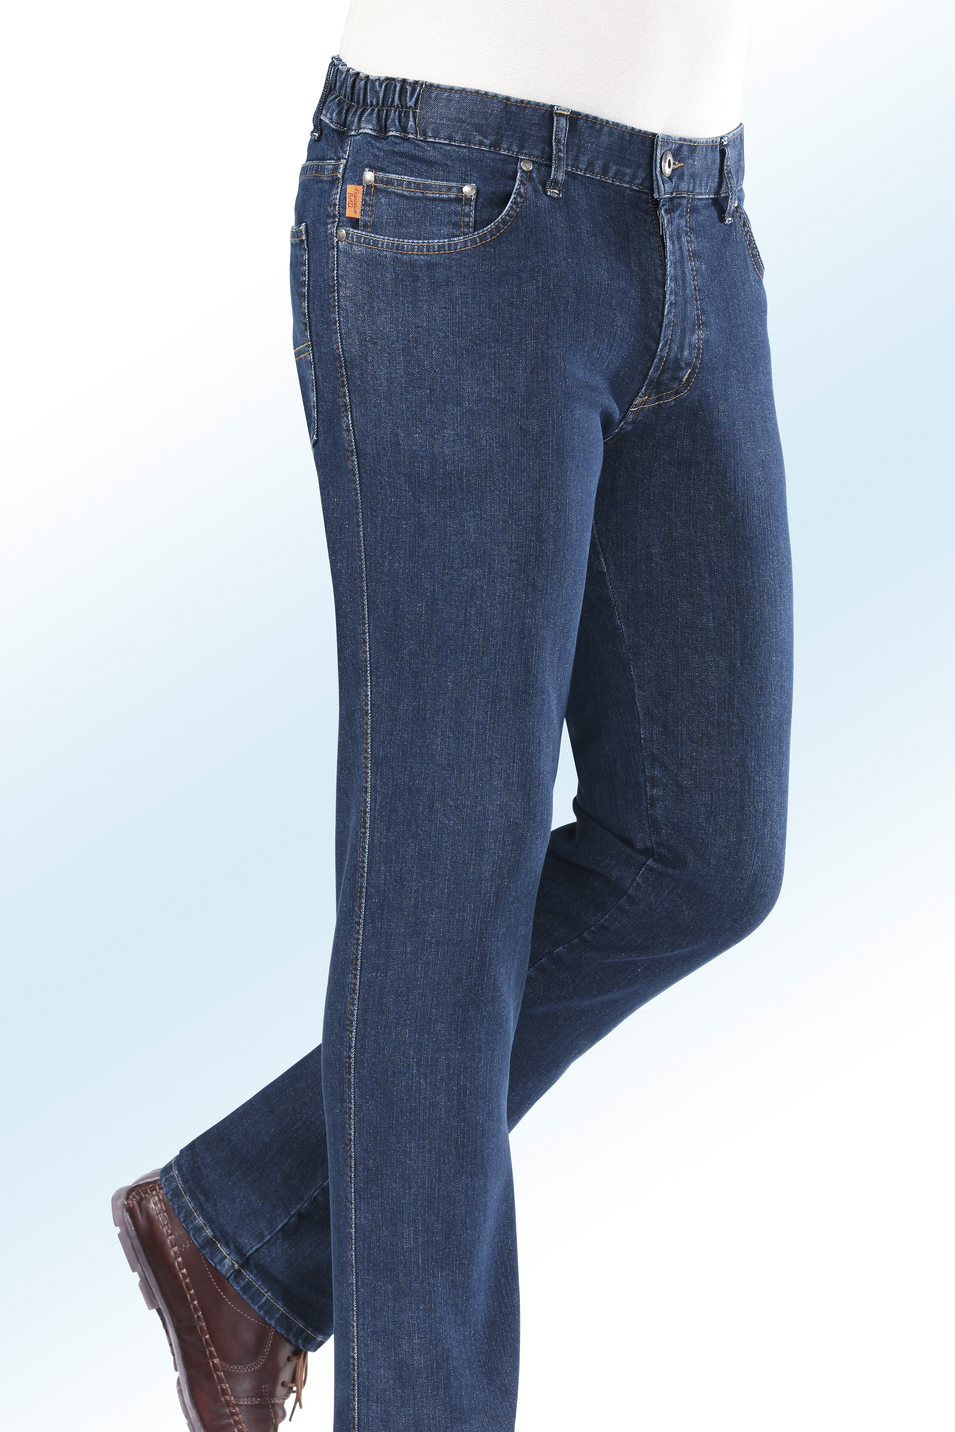 "Francesco Botti"-Jeans mit Dehnbundeinsätzen in 3 Farben, Jeansblau, Größe 28 von FRANCESCO BOTTI